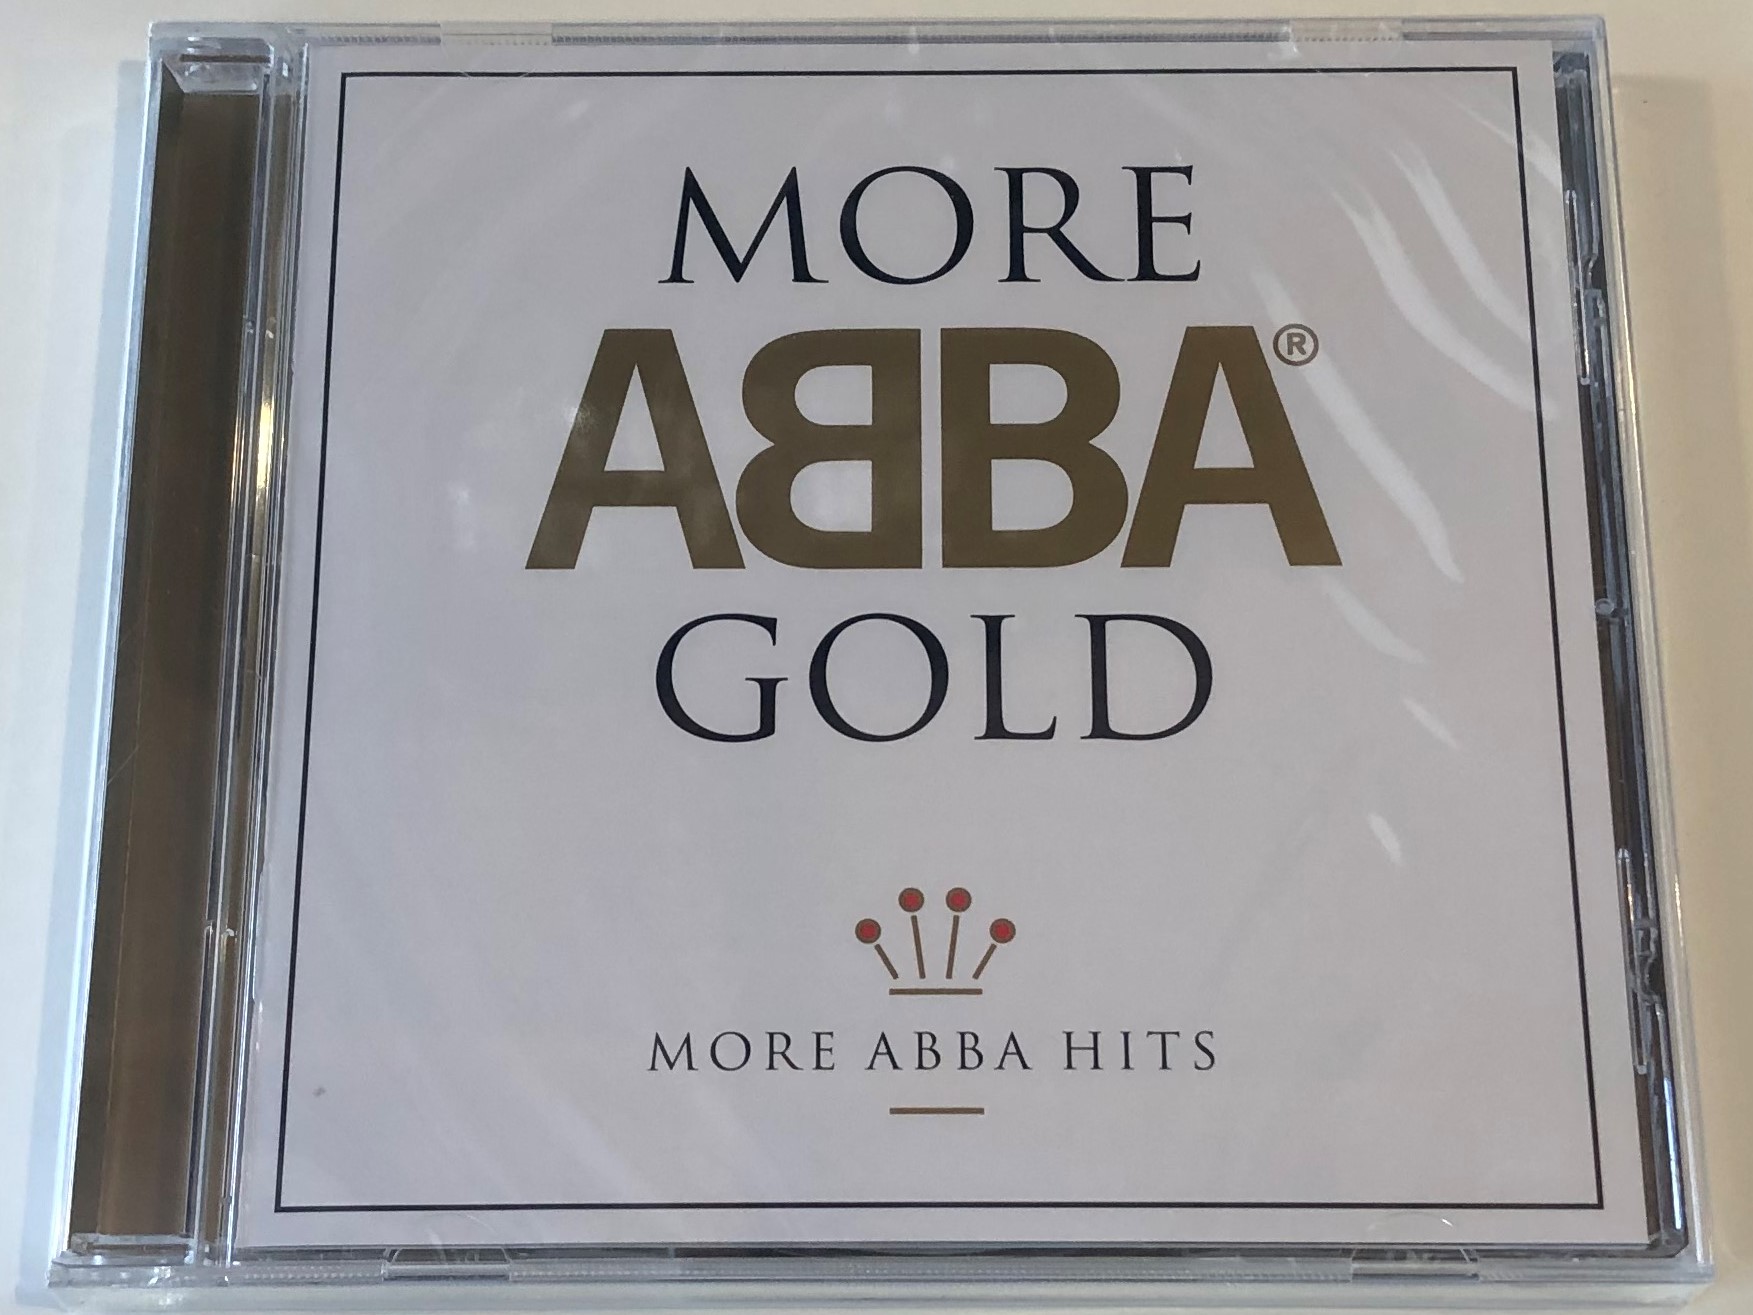 more-abba-gold-more-abba-hits-polar-audio-cd-2008-060251724733-1-.jpg